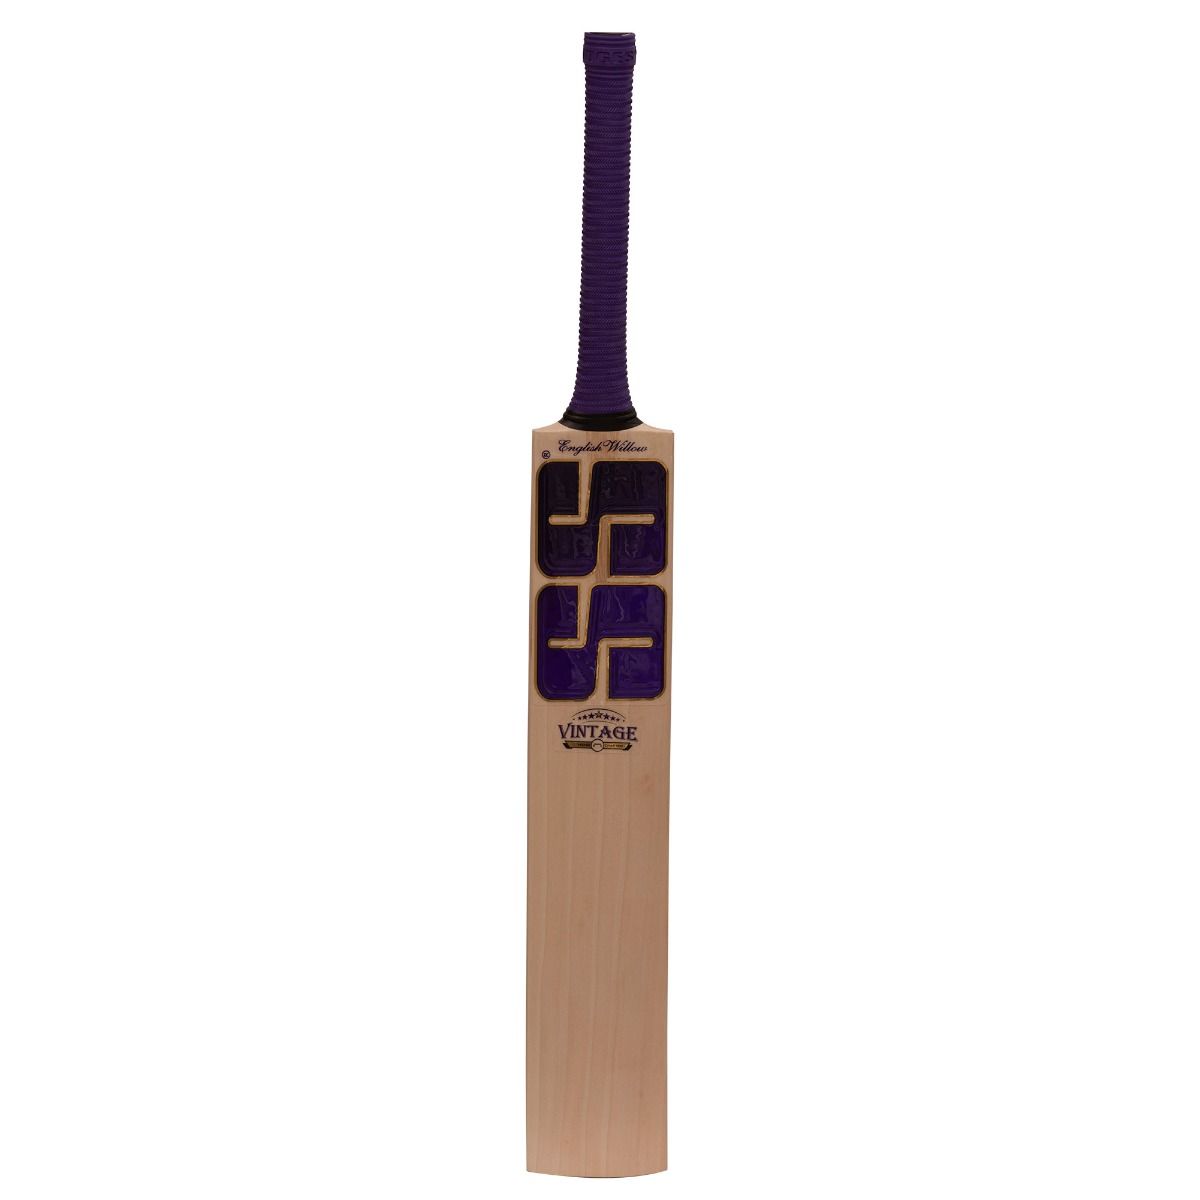 SS Cricket Bat Ton Vintage 5.0